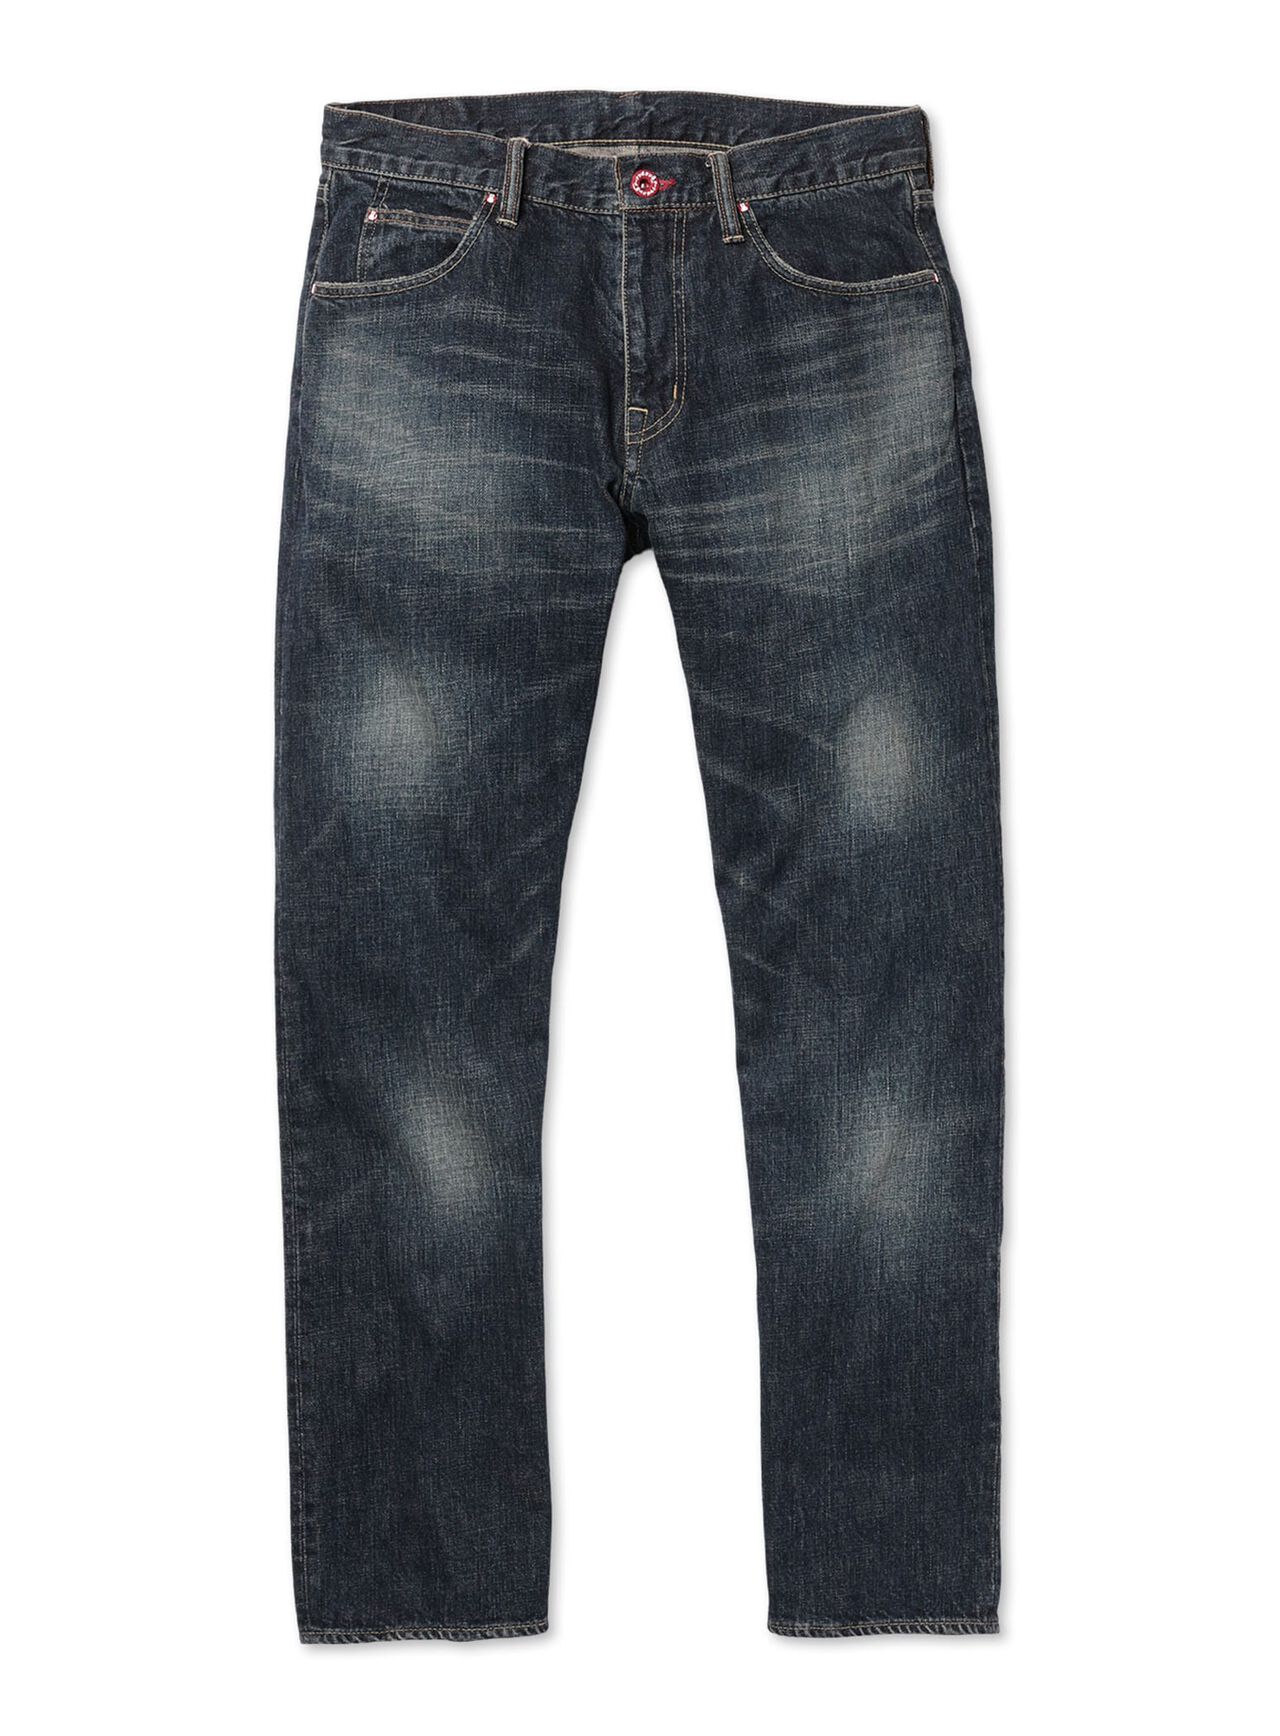 Jeans - Regular 22-U2 Four knees,, large image number 1